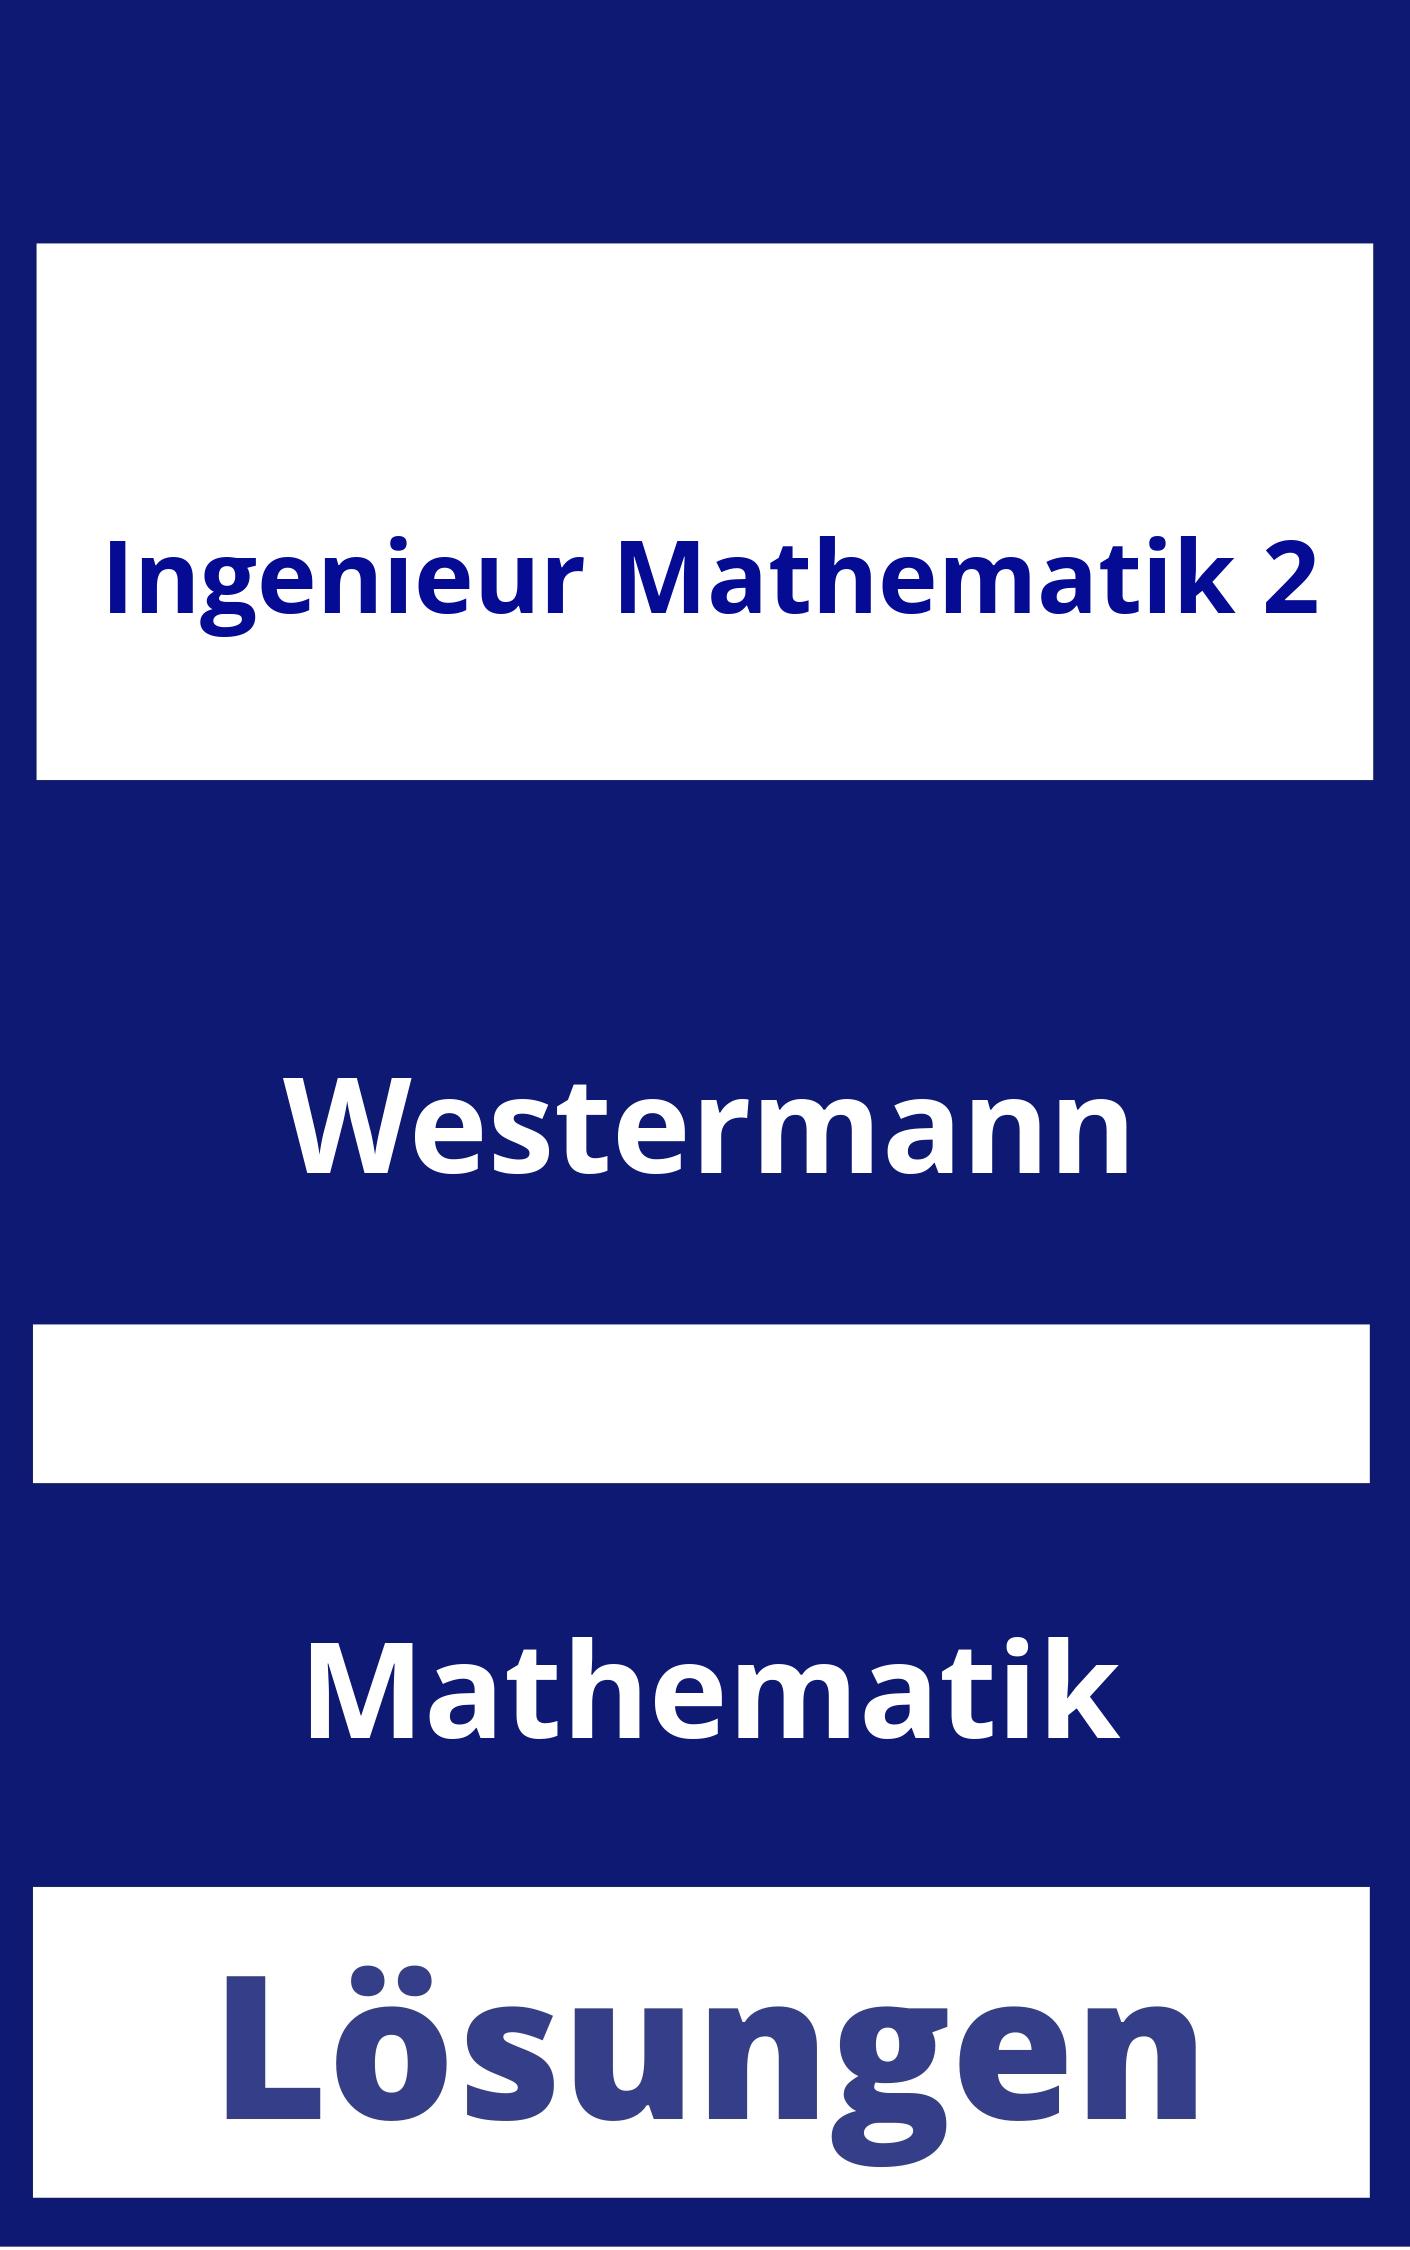 Ingenieur Mathematik 2 Lösungen PDF